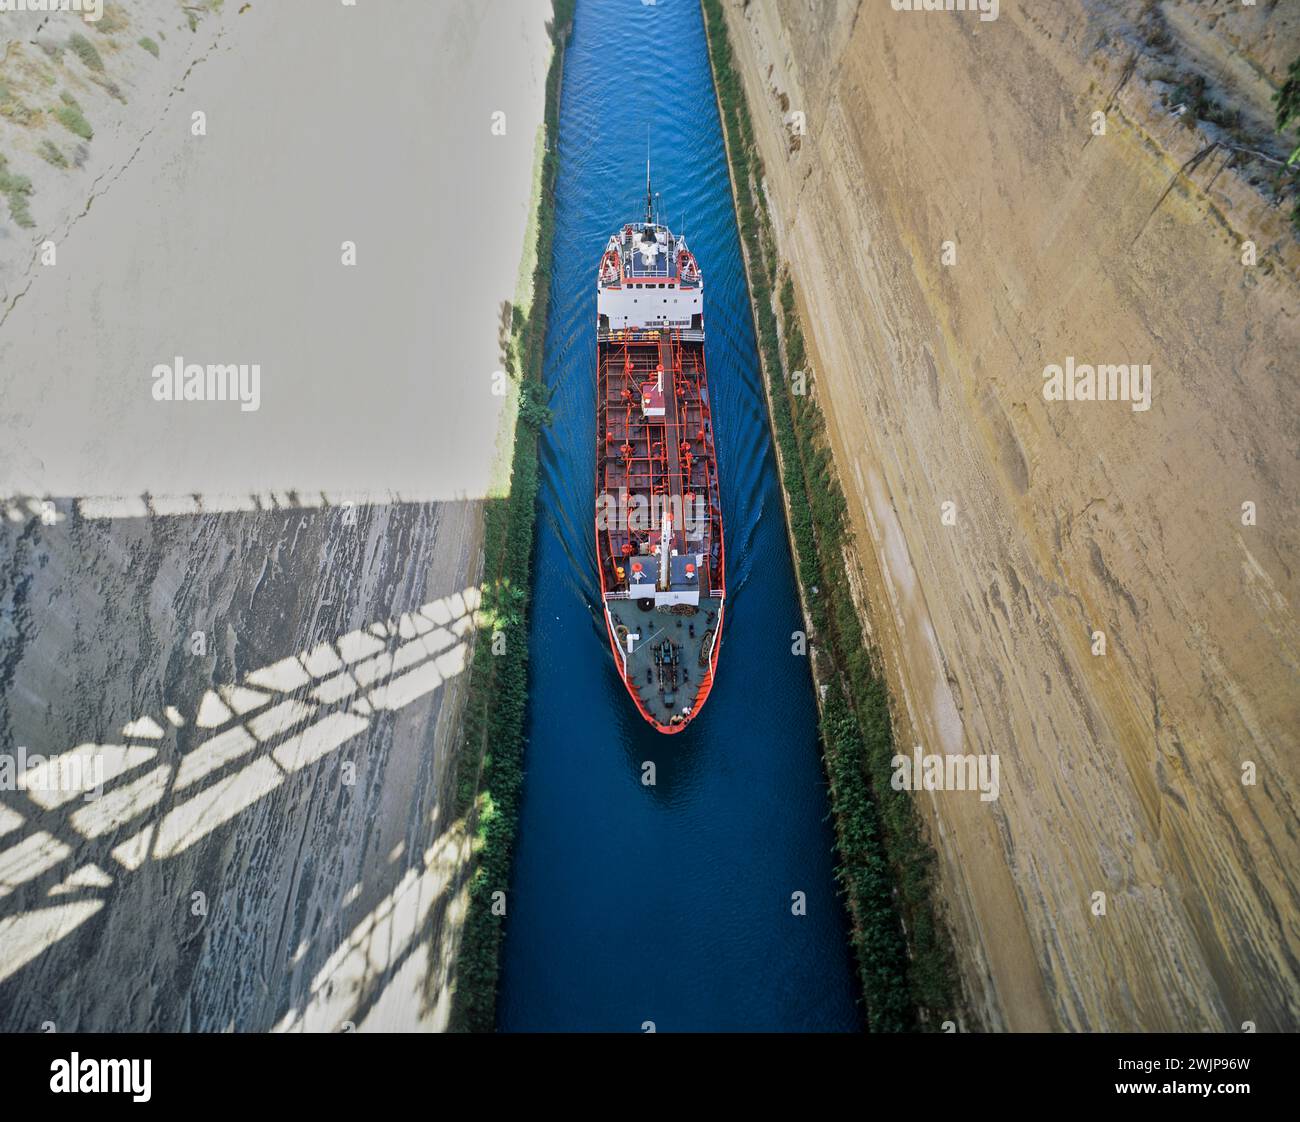 Aus der Vogelperspektive eines roten Schiffes, das durch einen schmalen Kanal unter einer Brücke fährt, Korinth Kanal, Korinth, Peloponnes, Griechenland Stockfoto